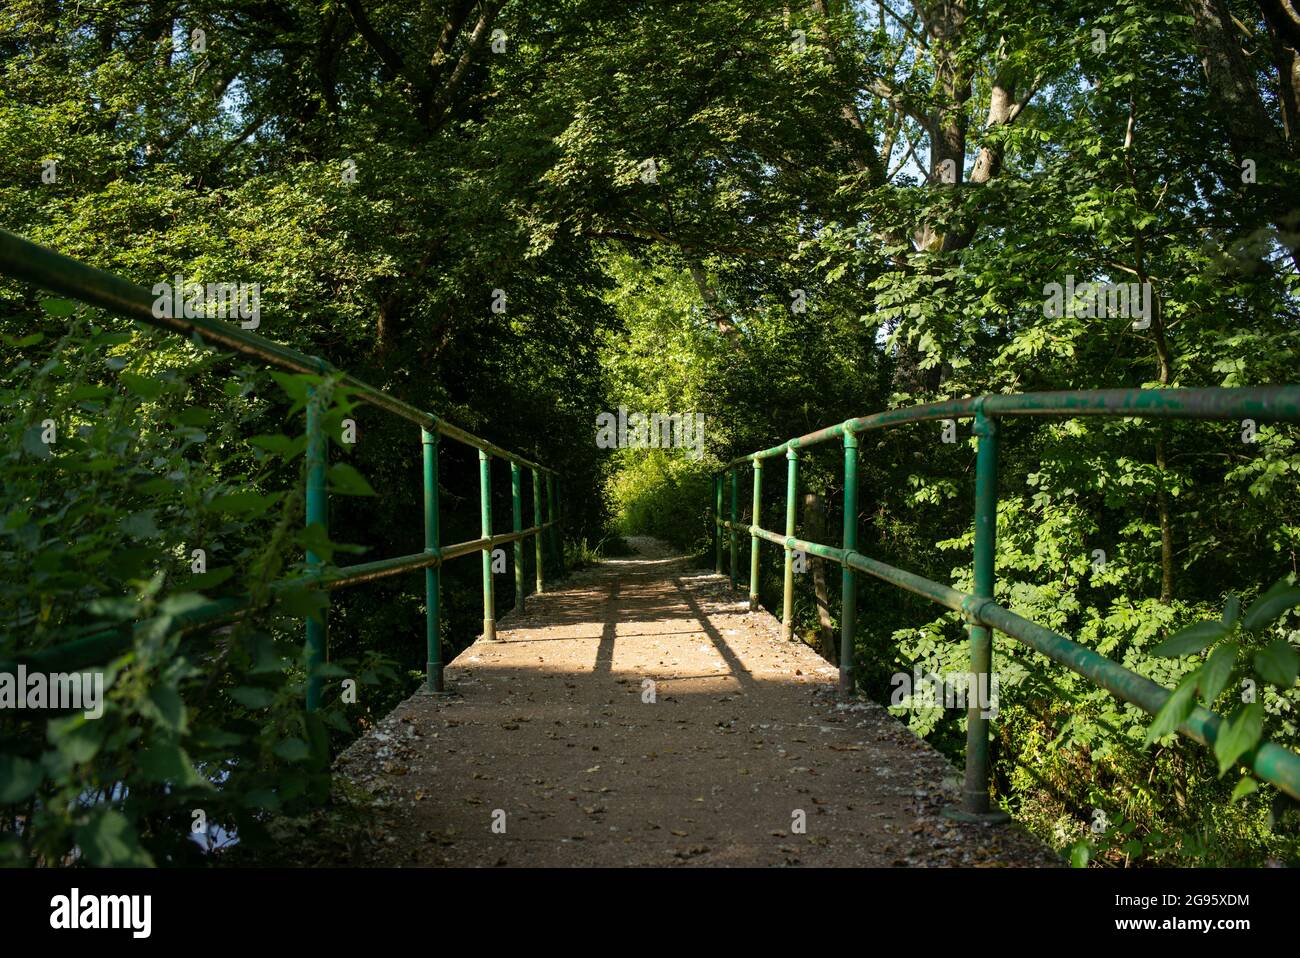 Eine eingleisige Brücke, die zu einem überwucherten Fußweg führt, mit grünen Handschienen, die Leitlinien verwenden, um die Perspektive zu erweitern. Mögliches Konzeptbild. Stockfoto